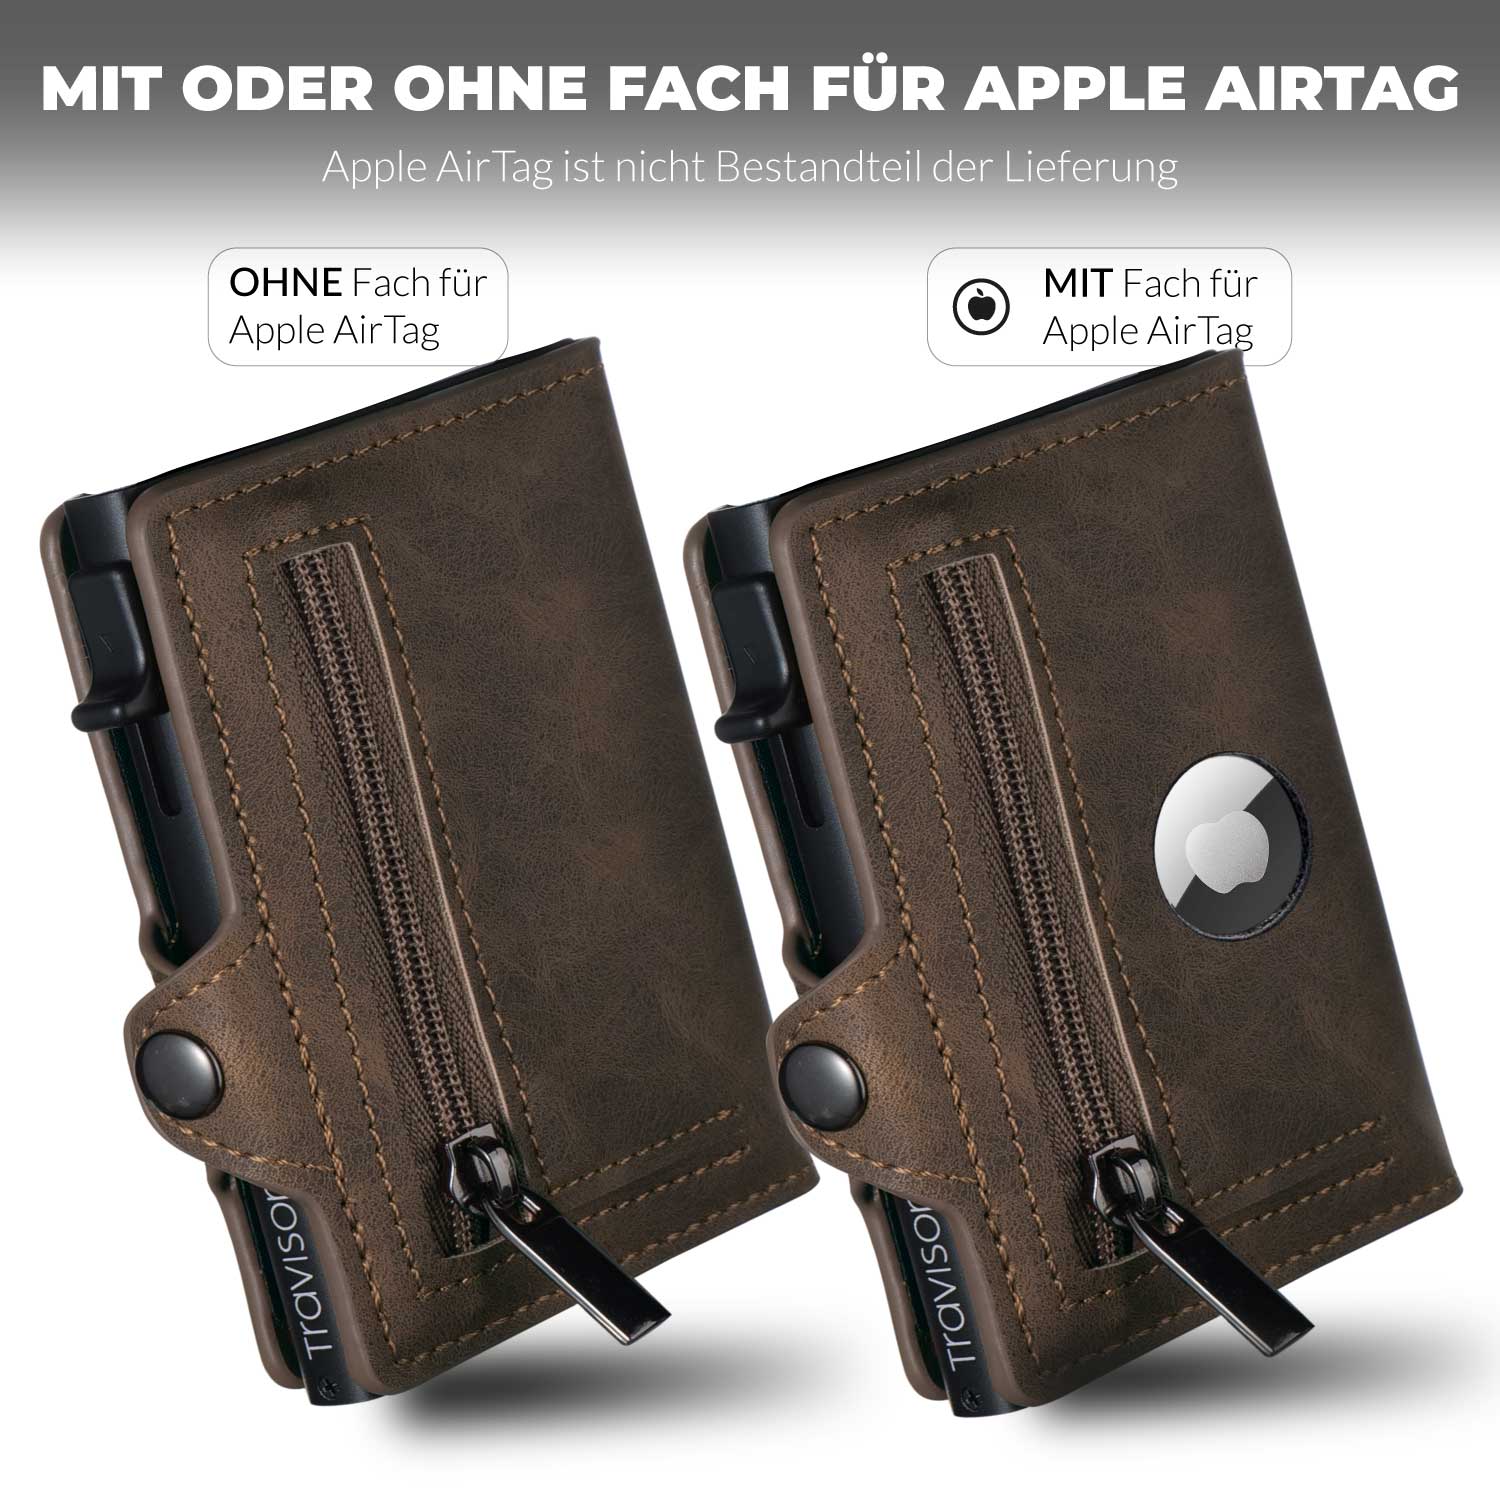 Das Smart Wallet in der Farbe braun im Vergleich mit und ohne Fach für das AirTag/Braun/Ja